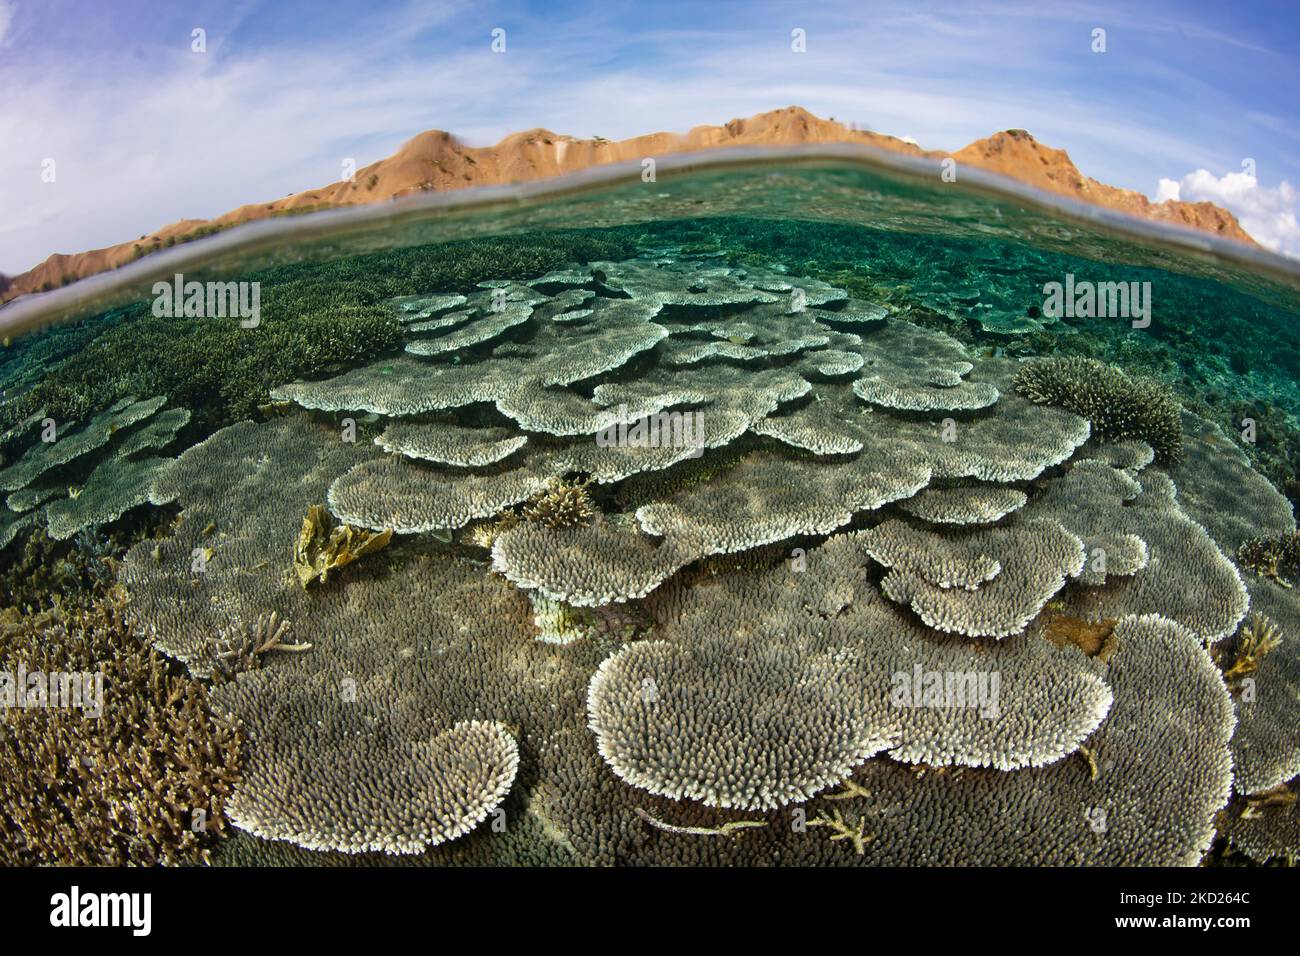 Auf einem flachen, gesunden Riff in der Nähe von Komodo, Indonesien, konkurrieren Korallenriffe um den Weltraum. Dieses Gebiet als extrem hohe marine Artenvielfalt. Stockfoto